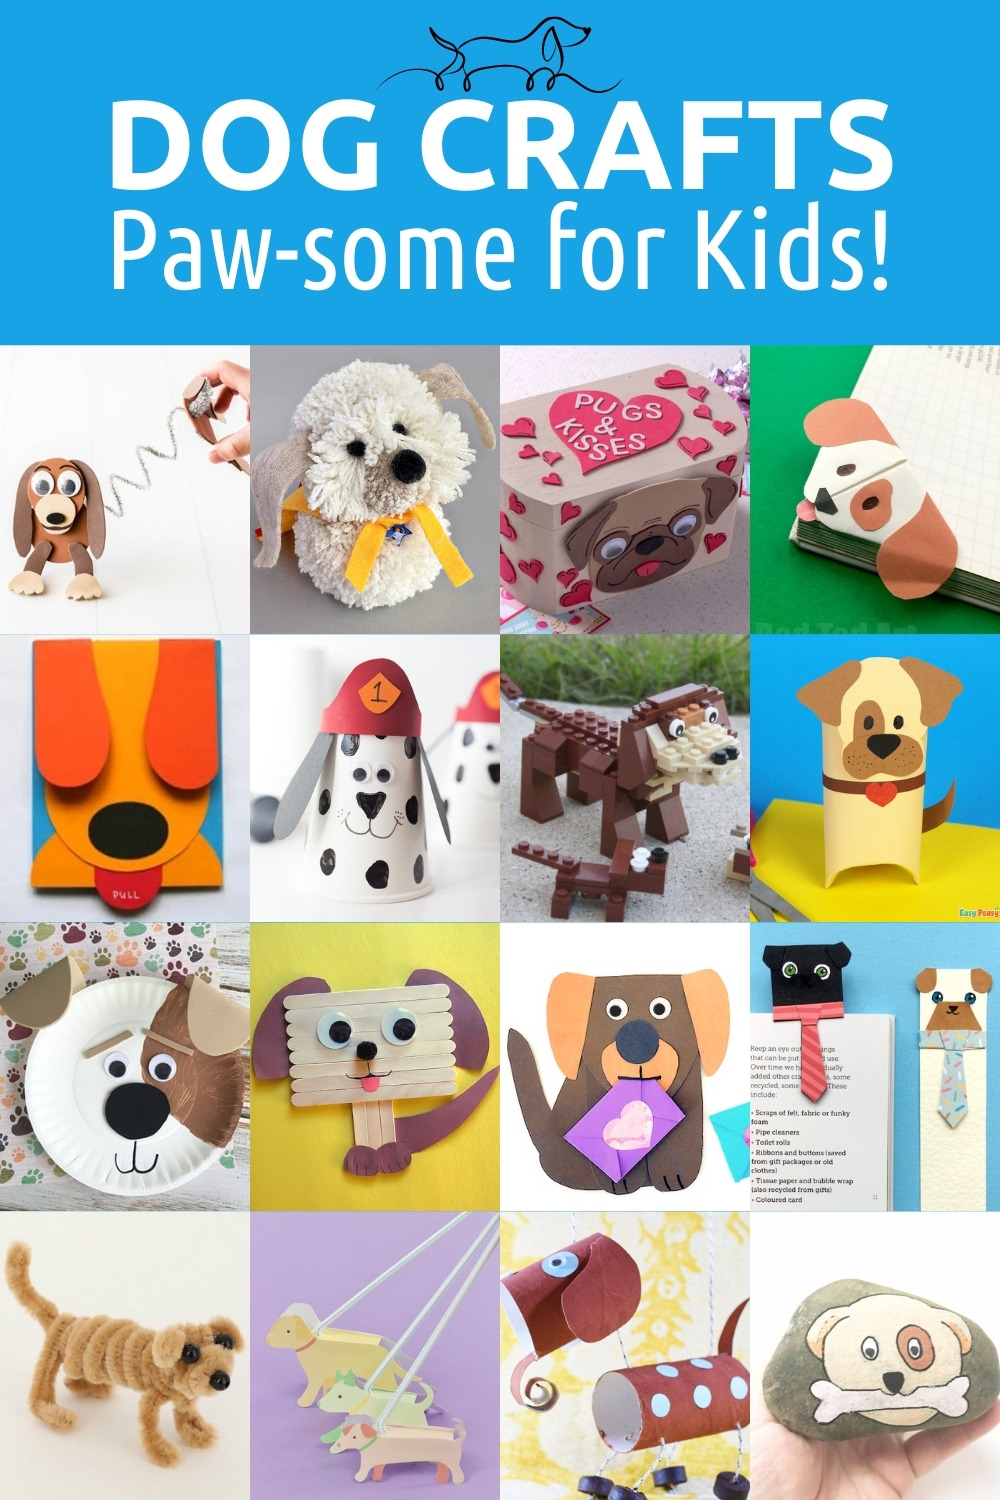 https://diycandy.b-cdn.net/wp-content/uploads/2022/08/Dog-crafts-for-kids.jpg